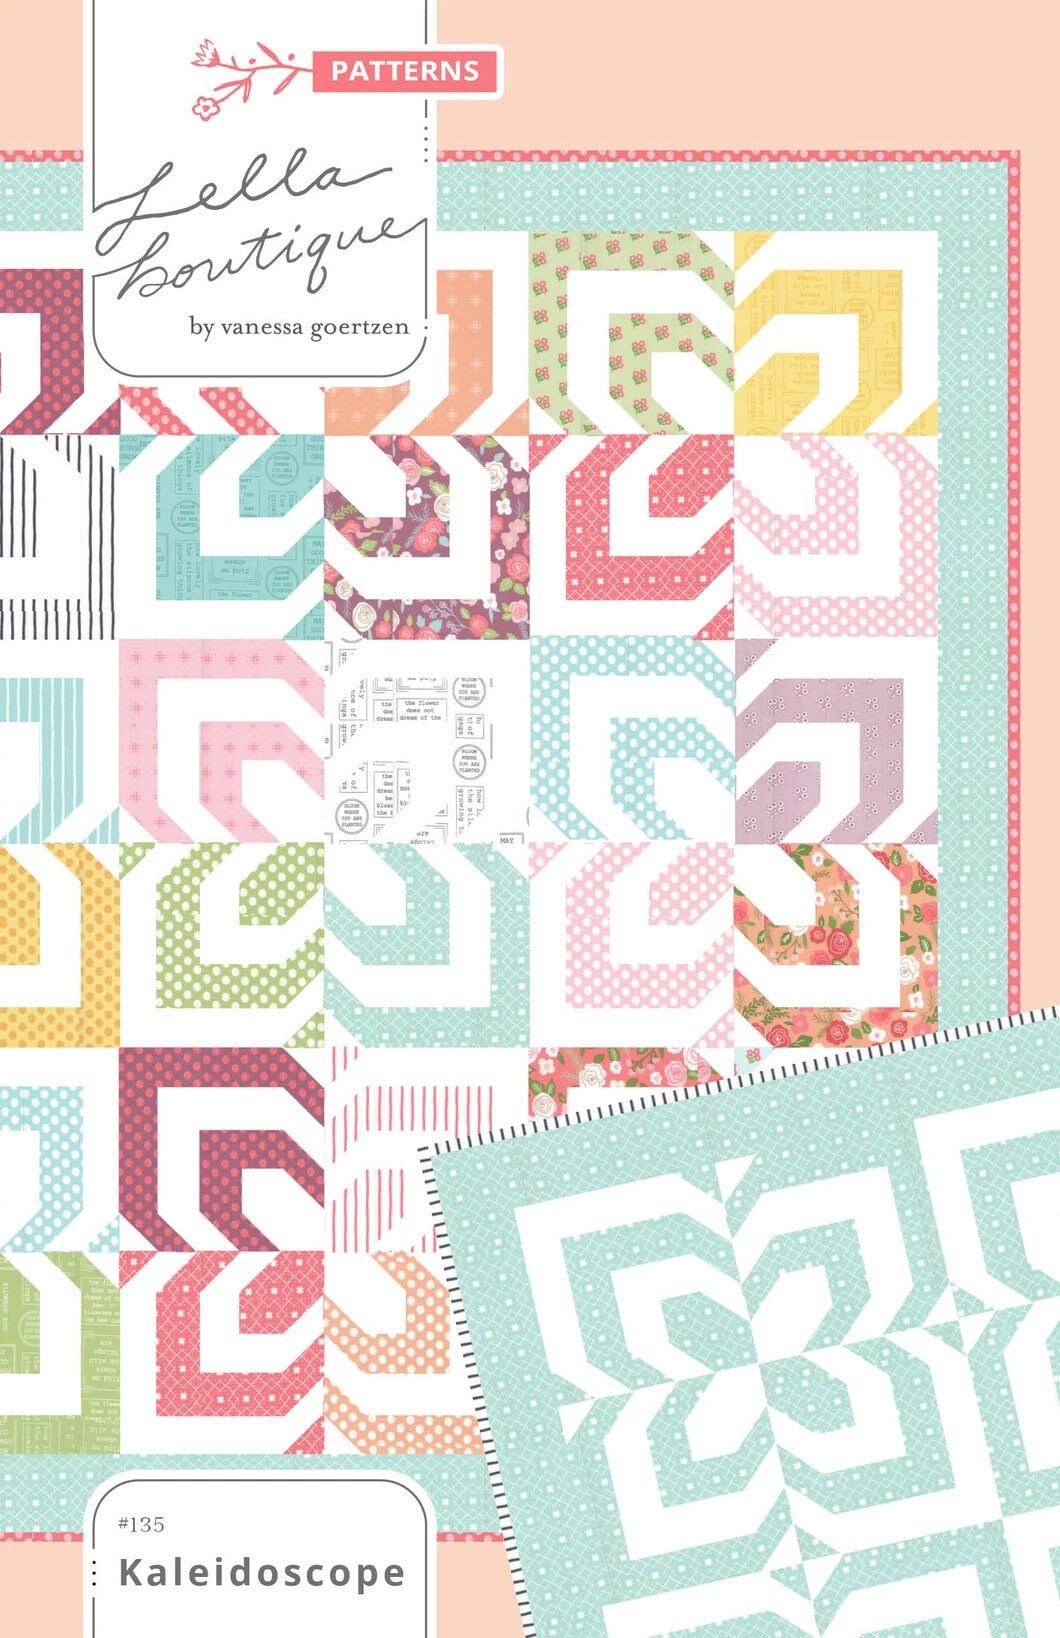 Kaleidoscope Quilt Pattern - Lella Boutique - Jelly Roll Friendly - Vanessa Goertzen - 70” x 70”